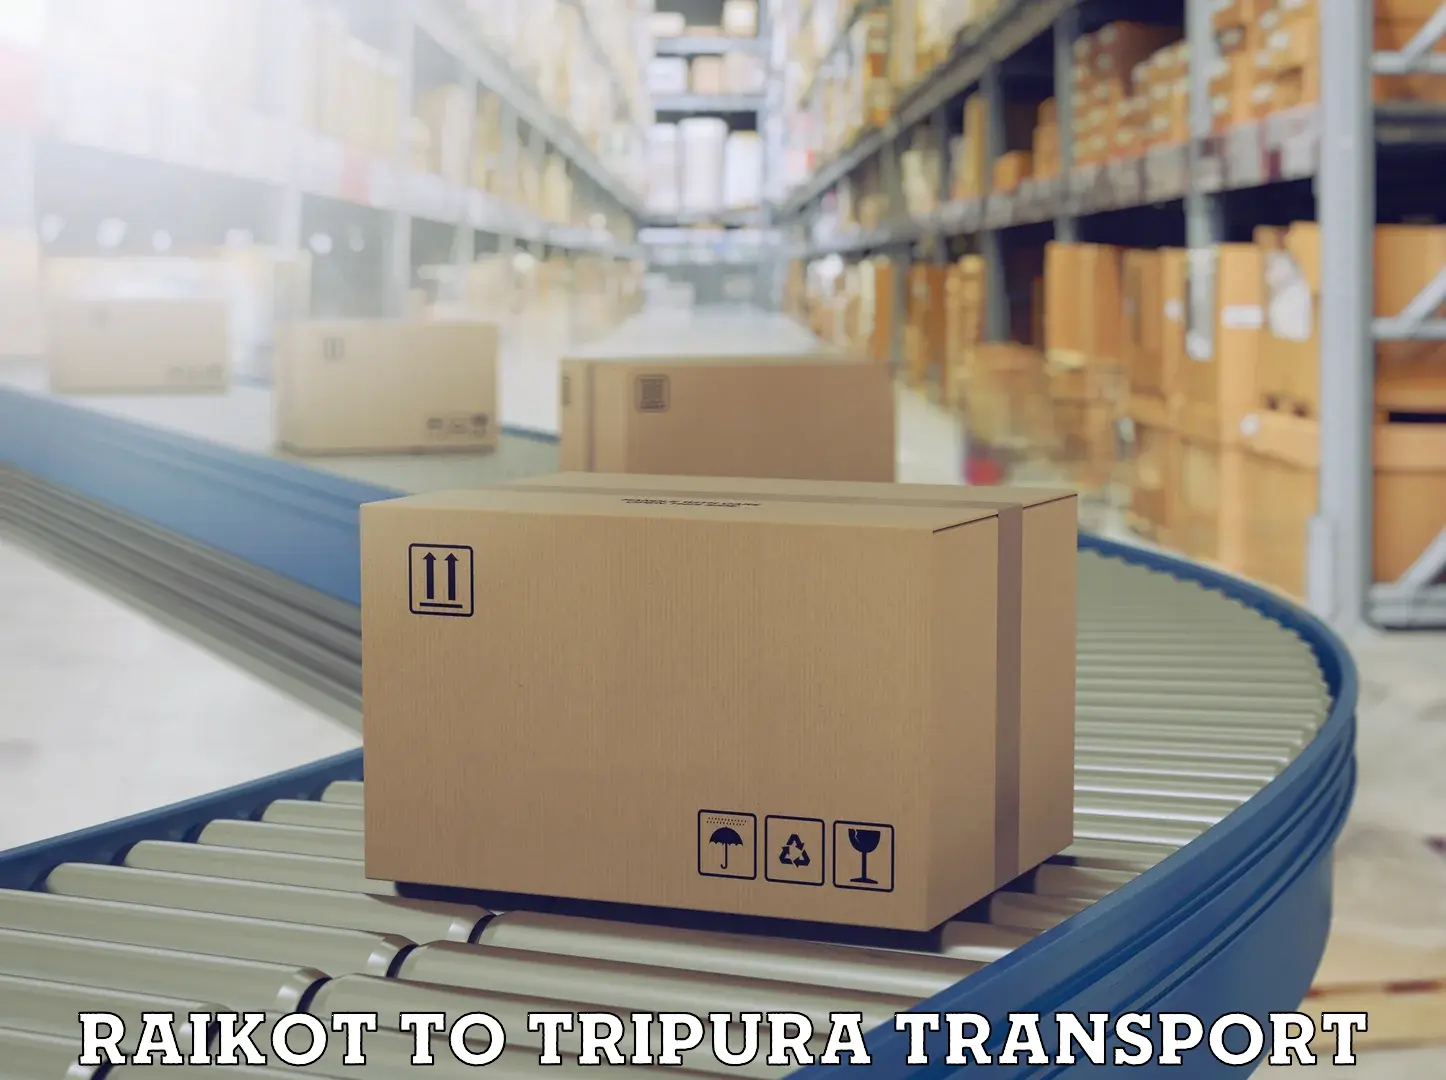 Interstate goods transport Raikot to Udaipur Tripura